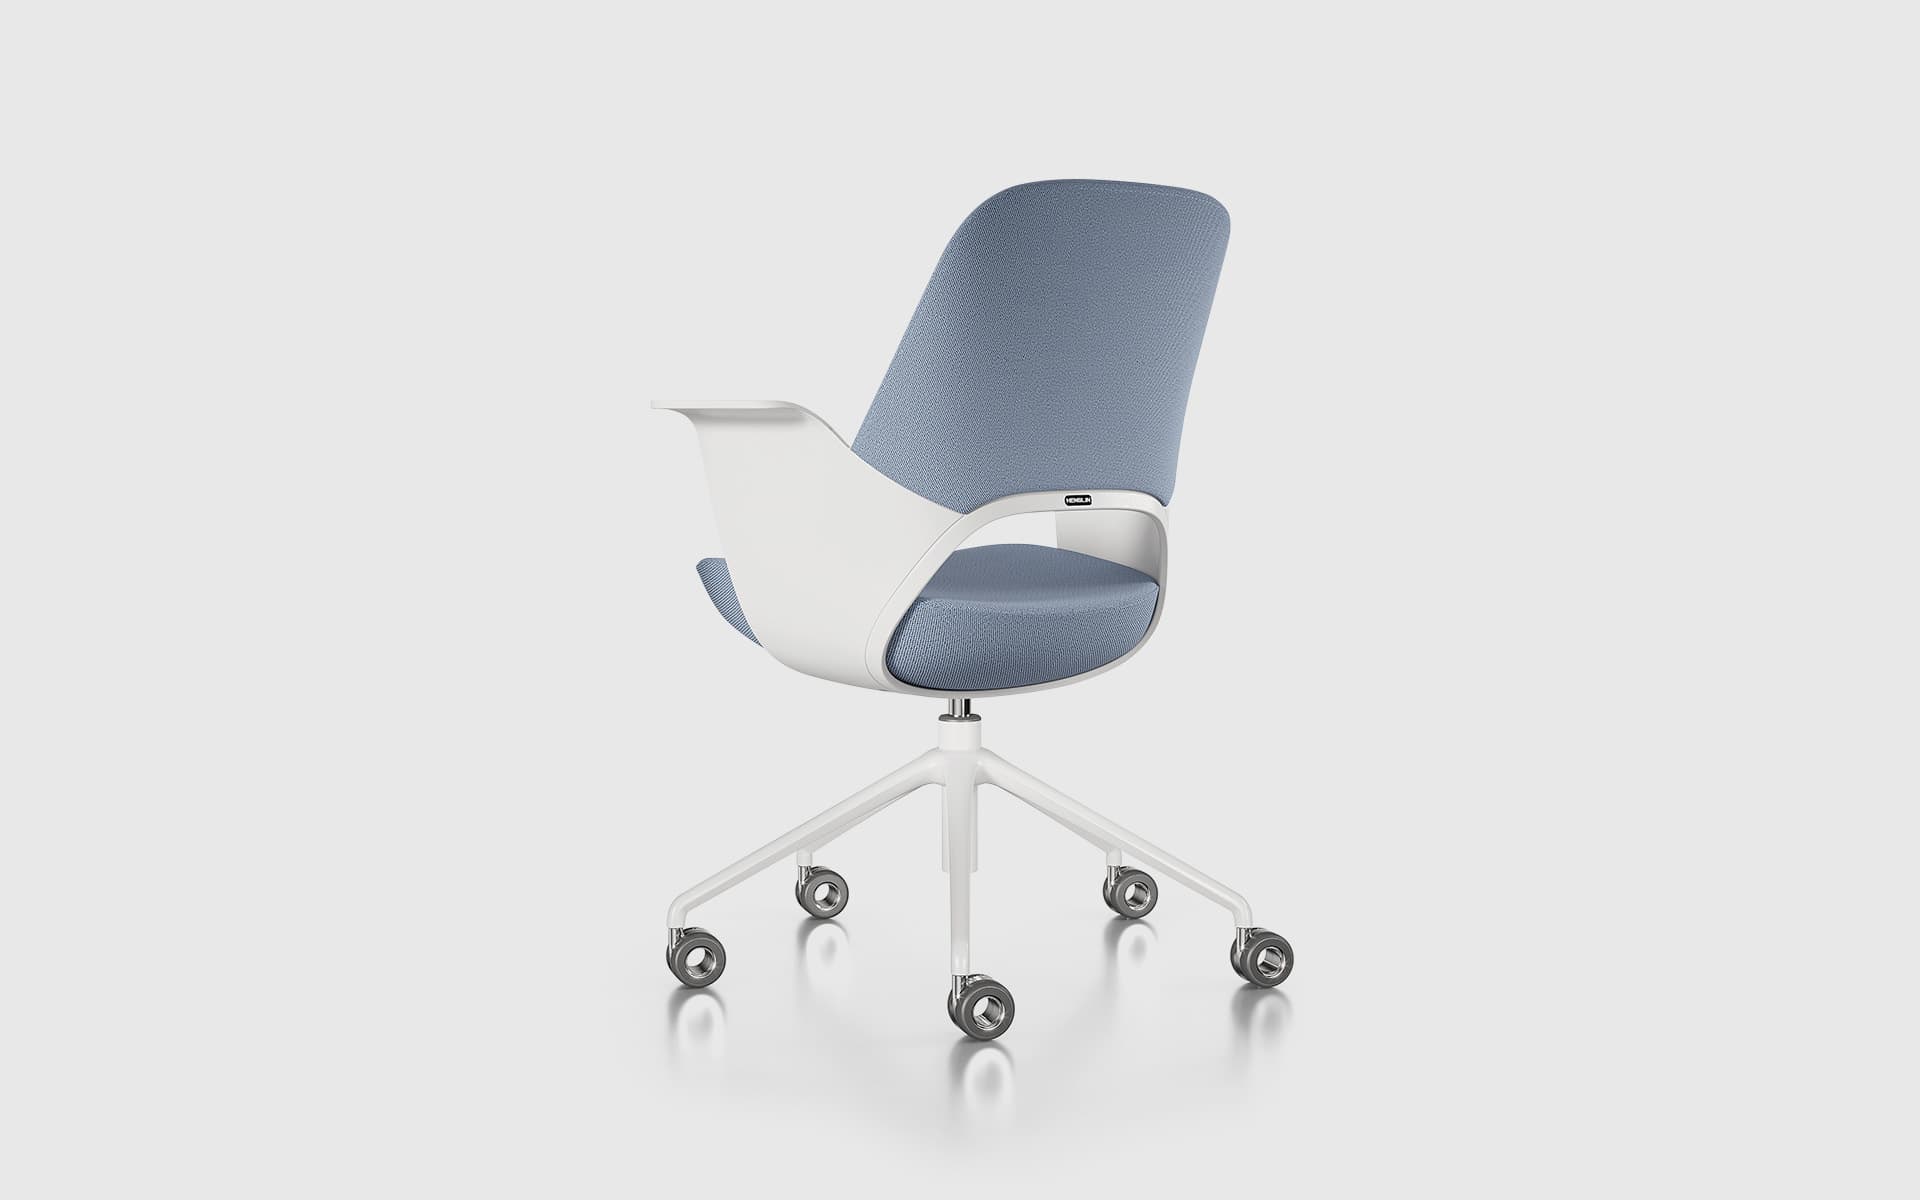 Rückansicht eines Henglin Caia Bürostuhls von ITO Design mit blauem Bezug